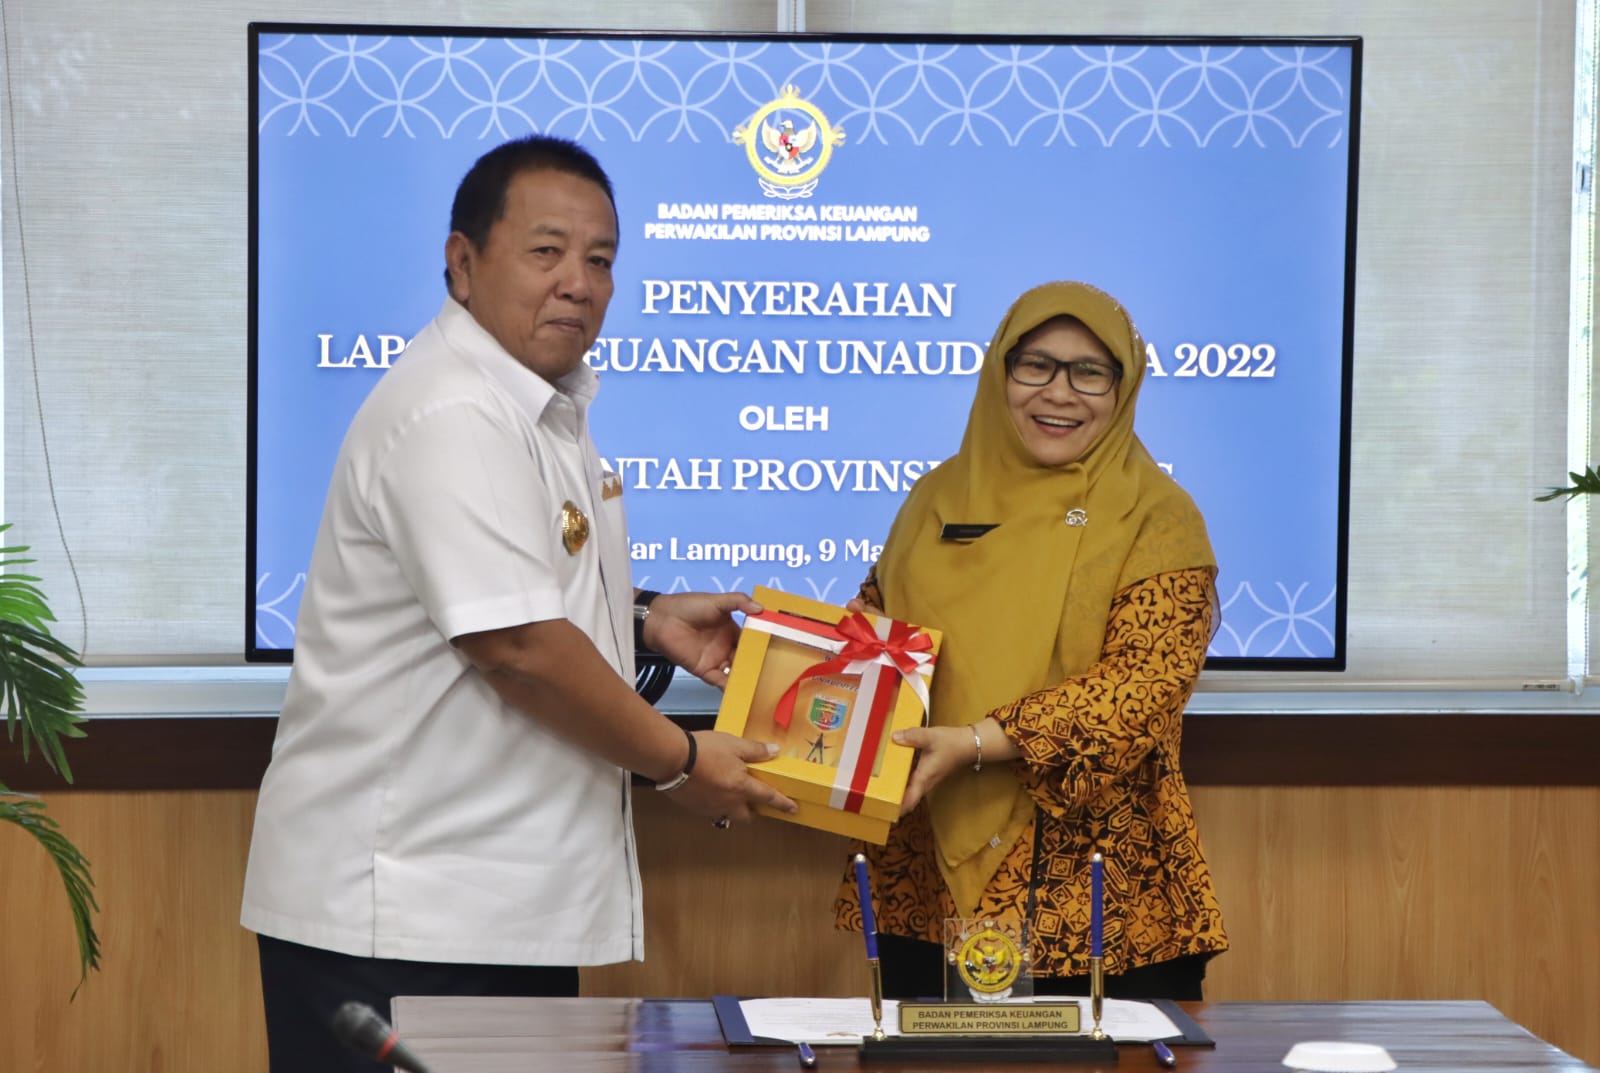 Gubernur Arinal Djunaidi Serahkan Laporan Keuangan Unaudited TA 2022 kepada BPK Perwakilan Lampung